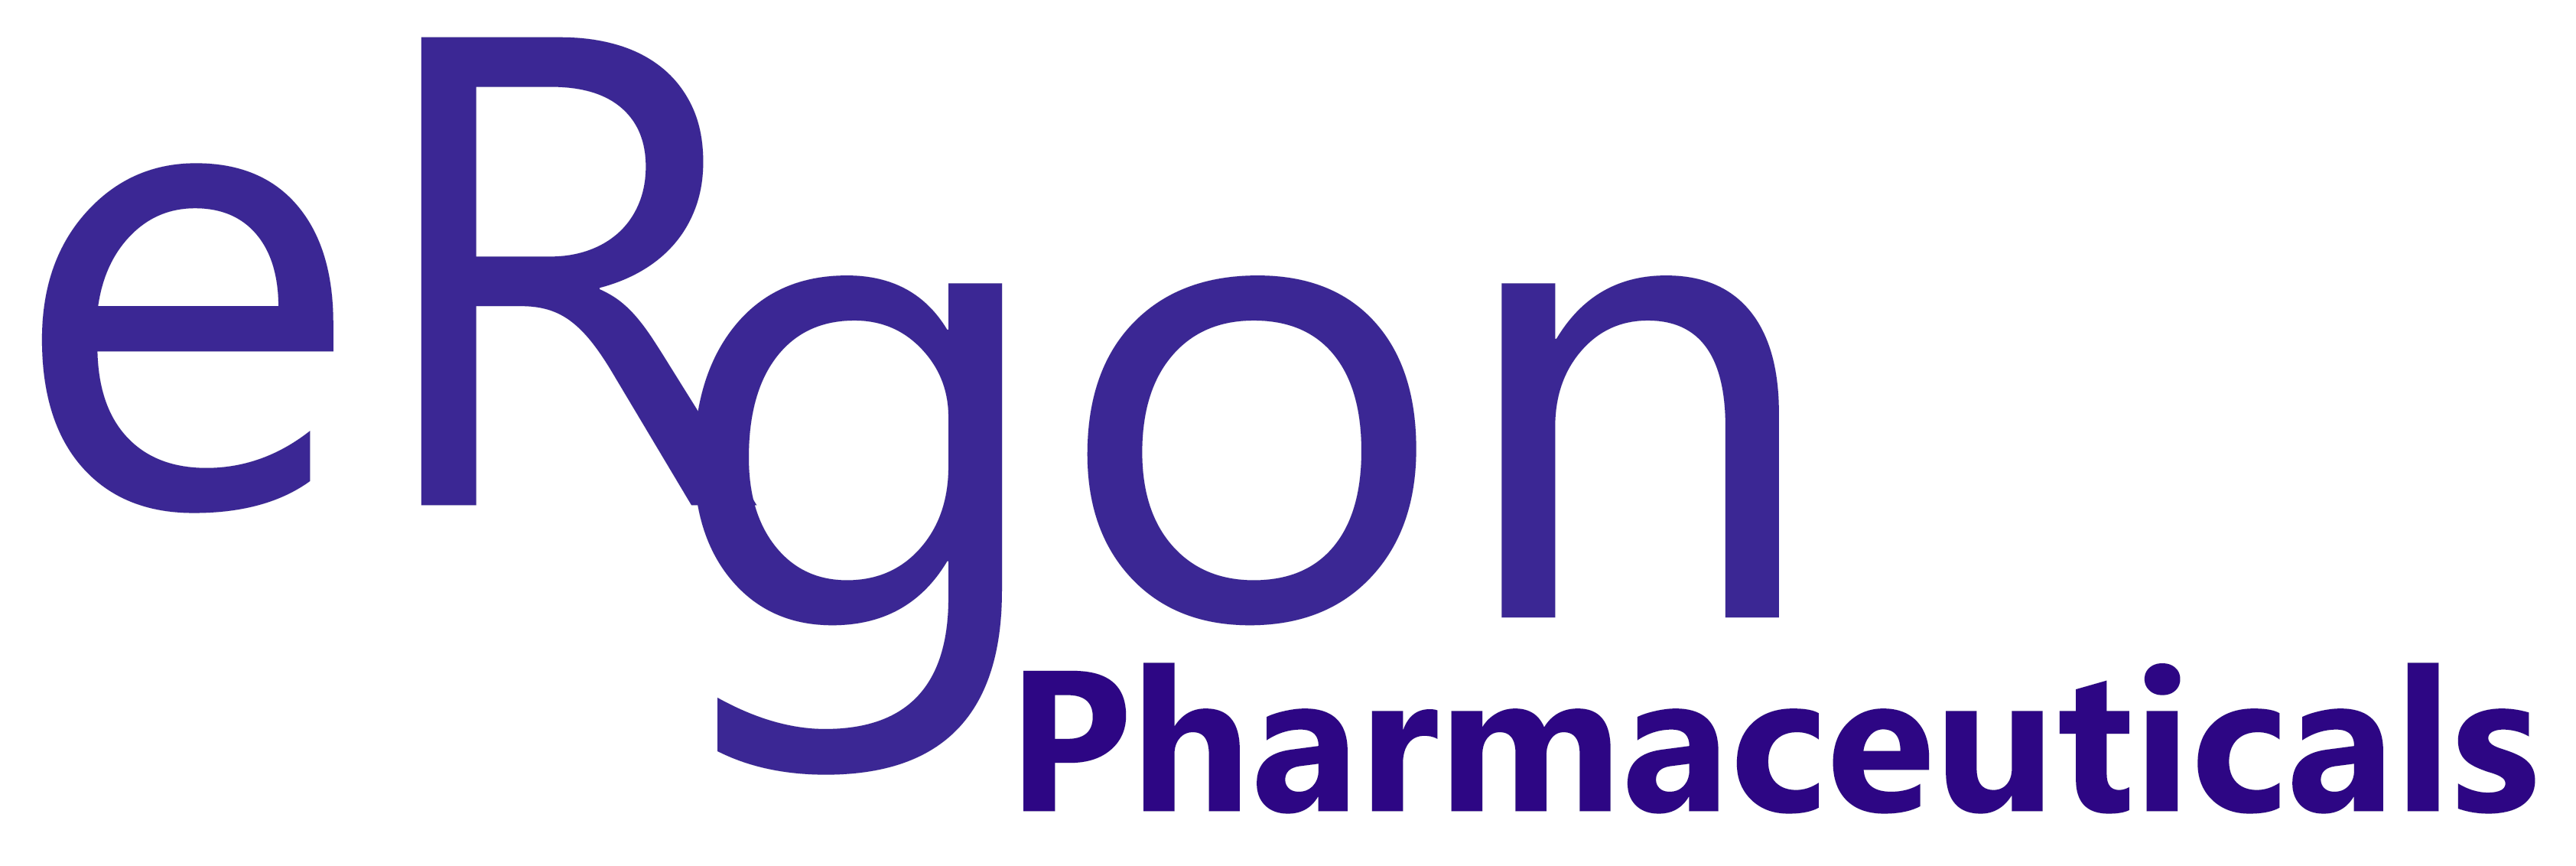 Ergon Pharma  Retina Logo